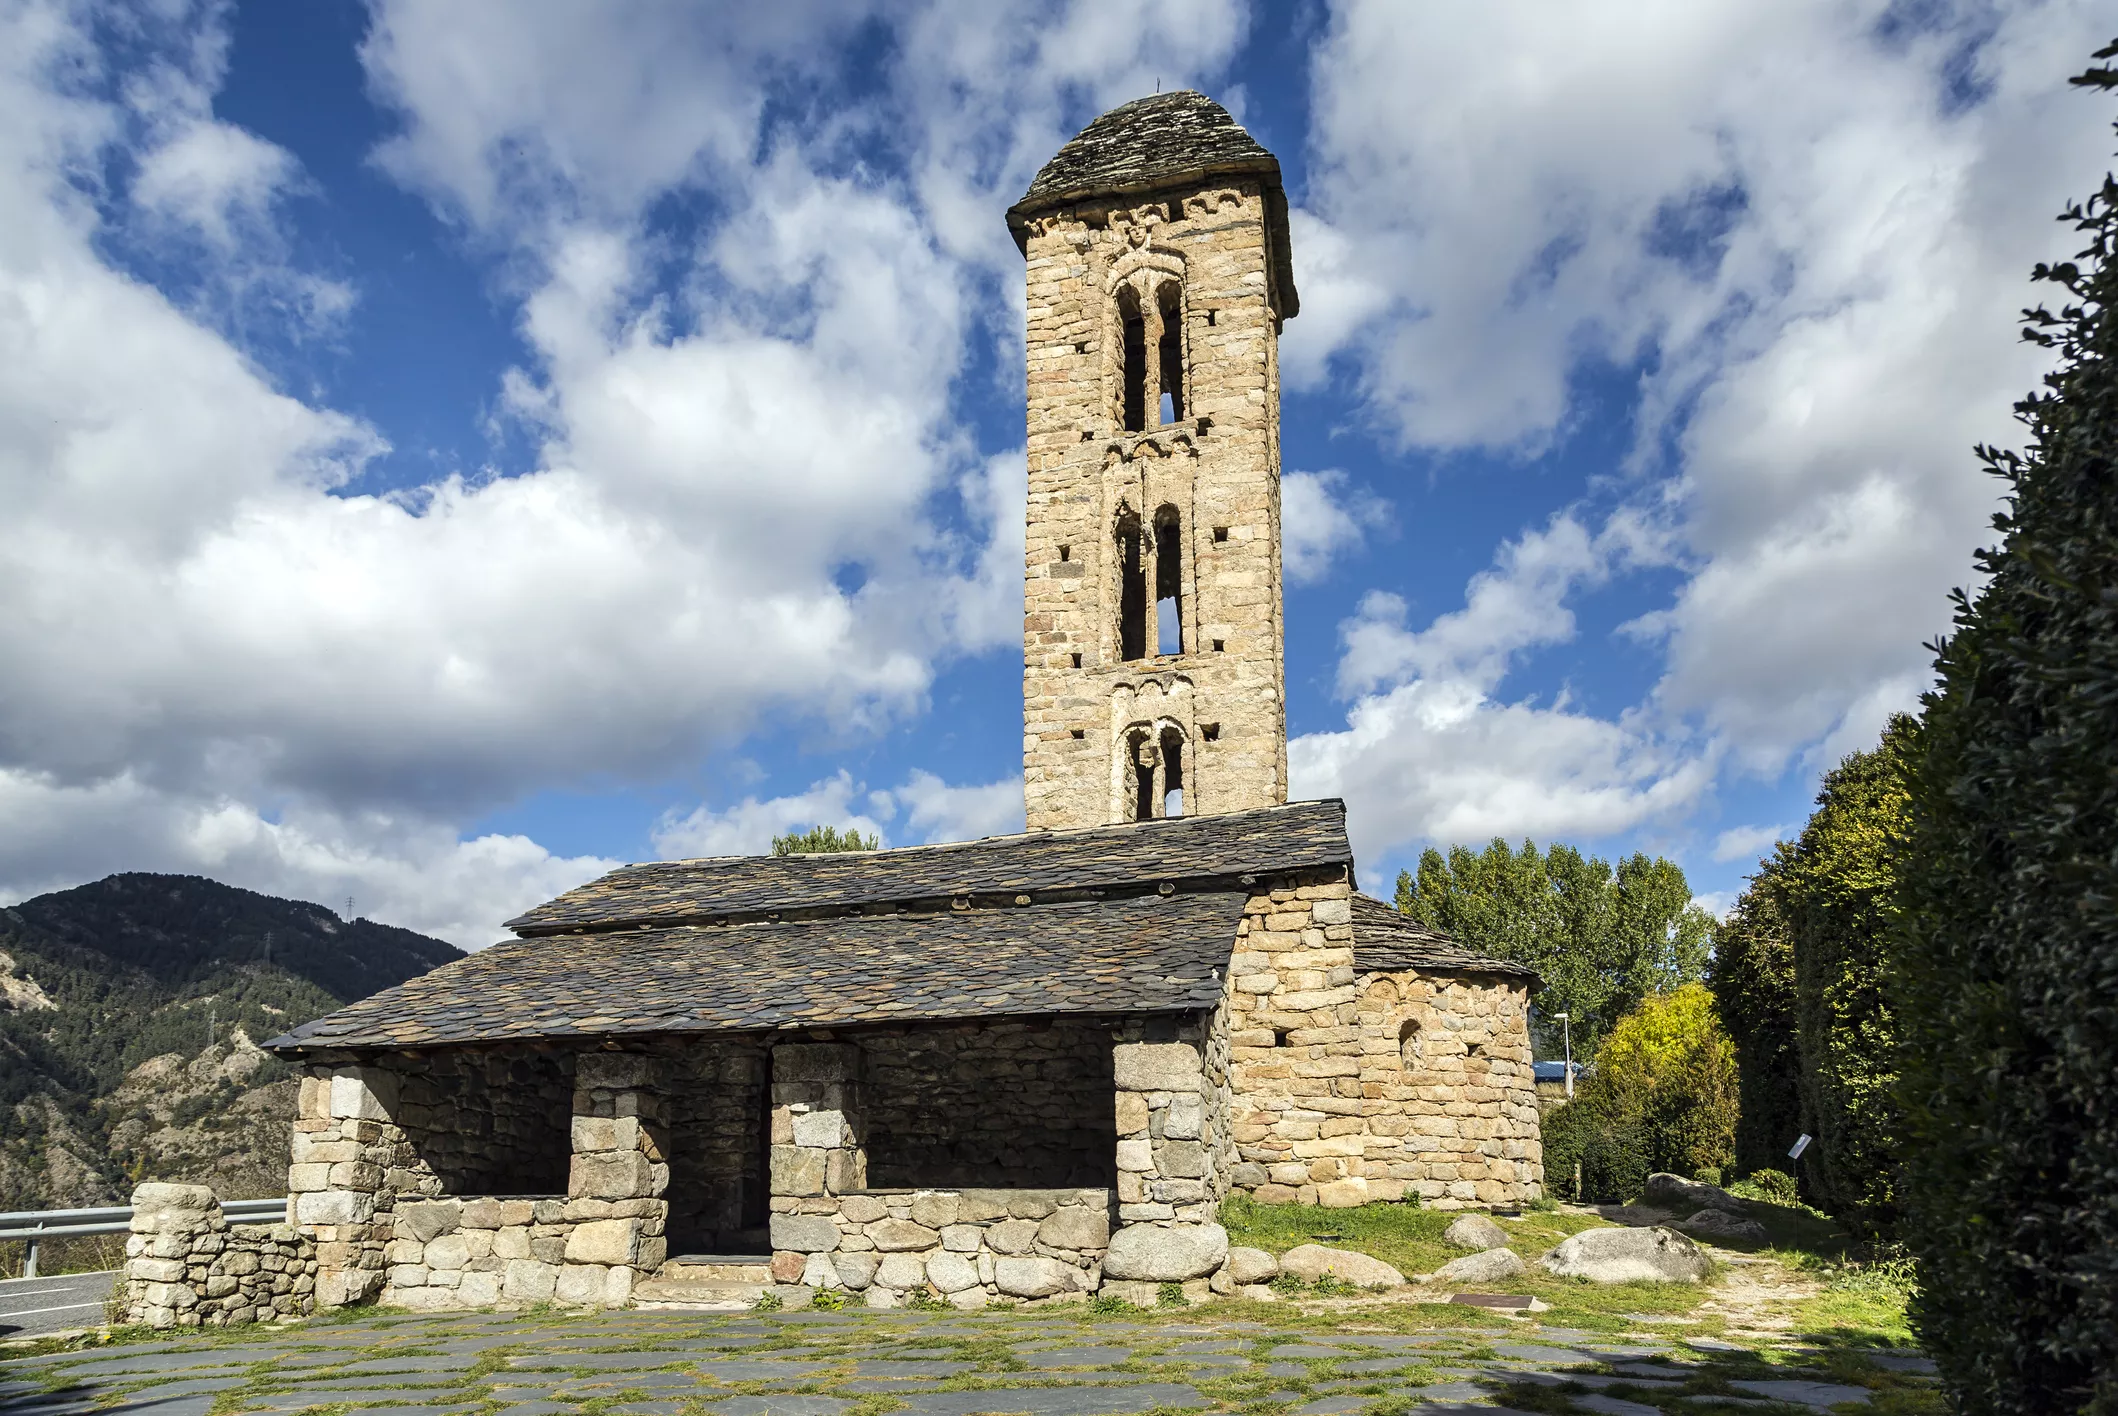 Les esglésies romàniques, com la de Sant Miquel d’Engolasters (segle XII), són el llegat de la influència episcopal en la història medieval d'Andorra